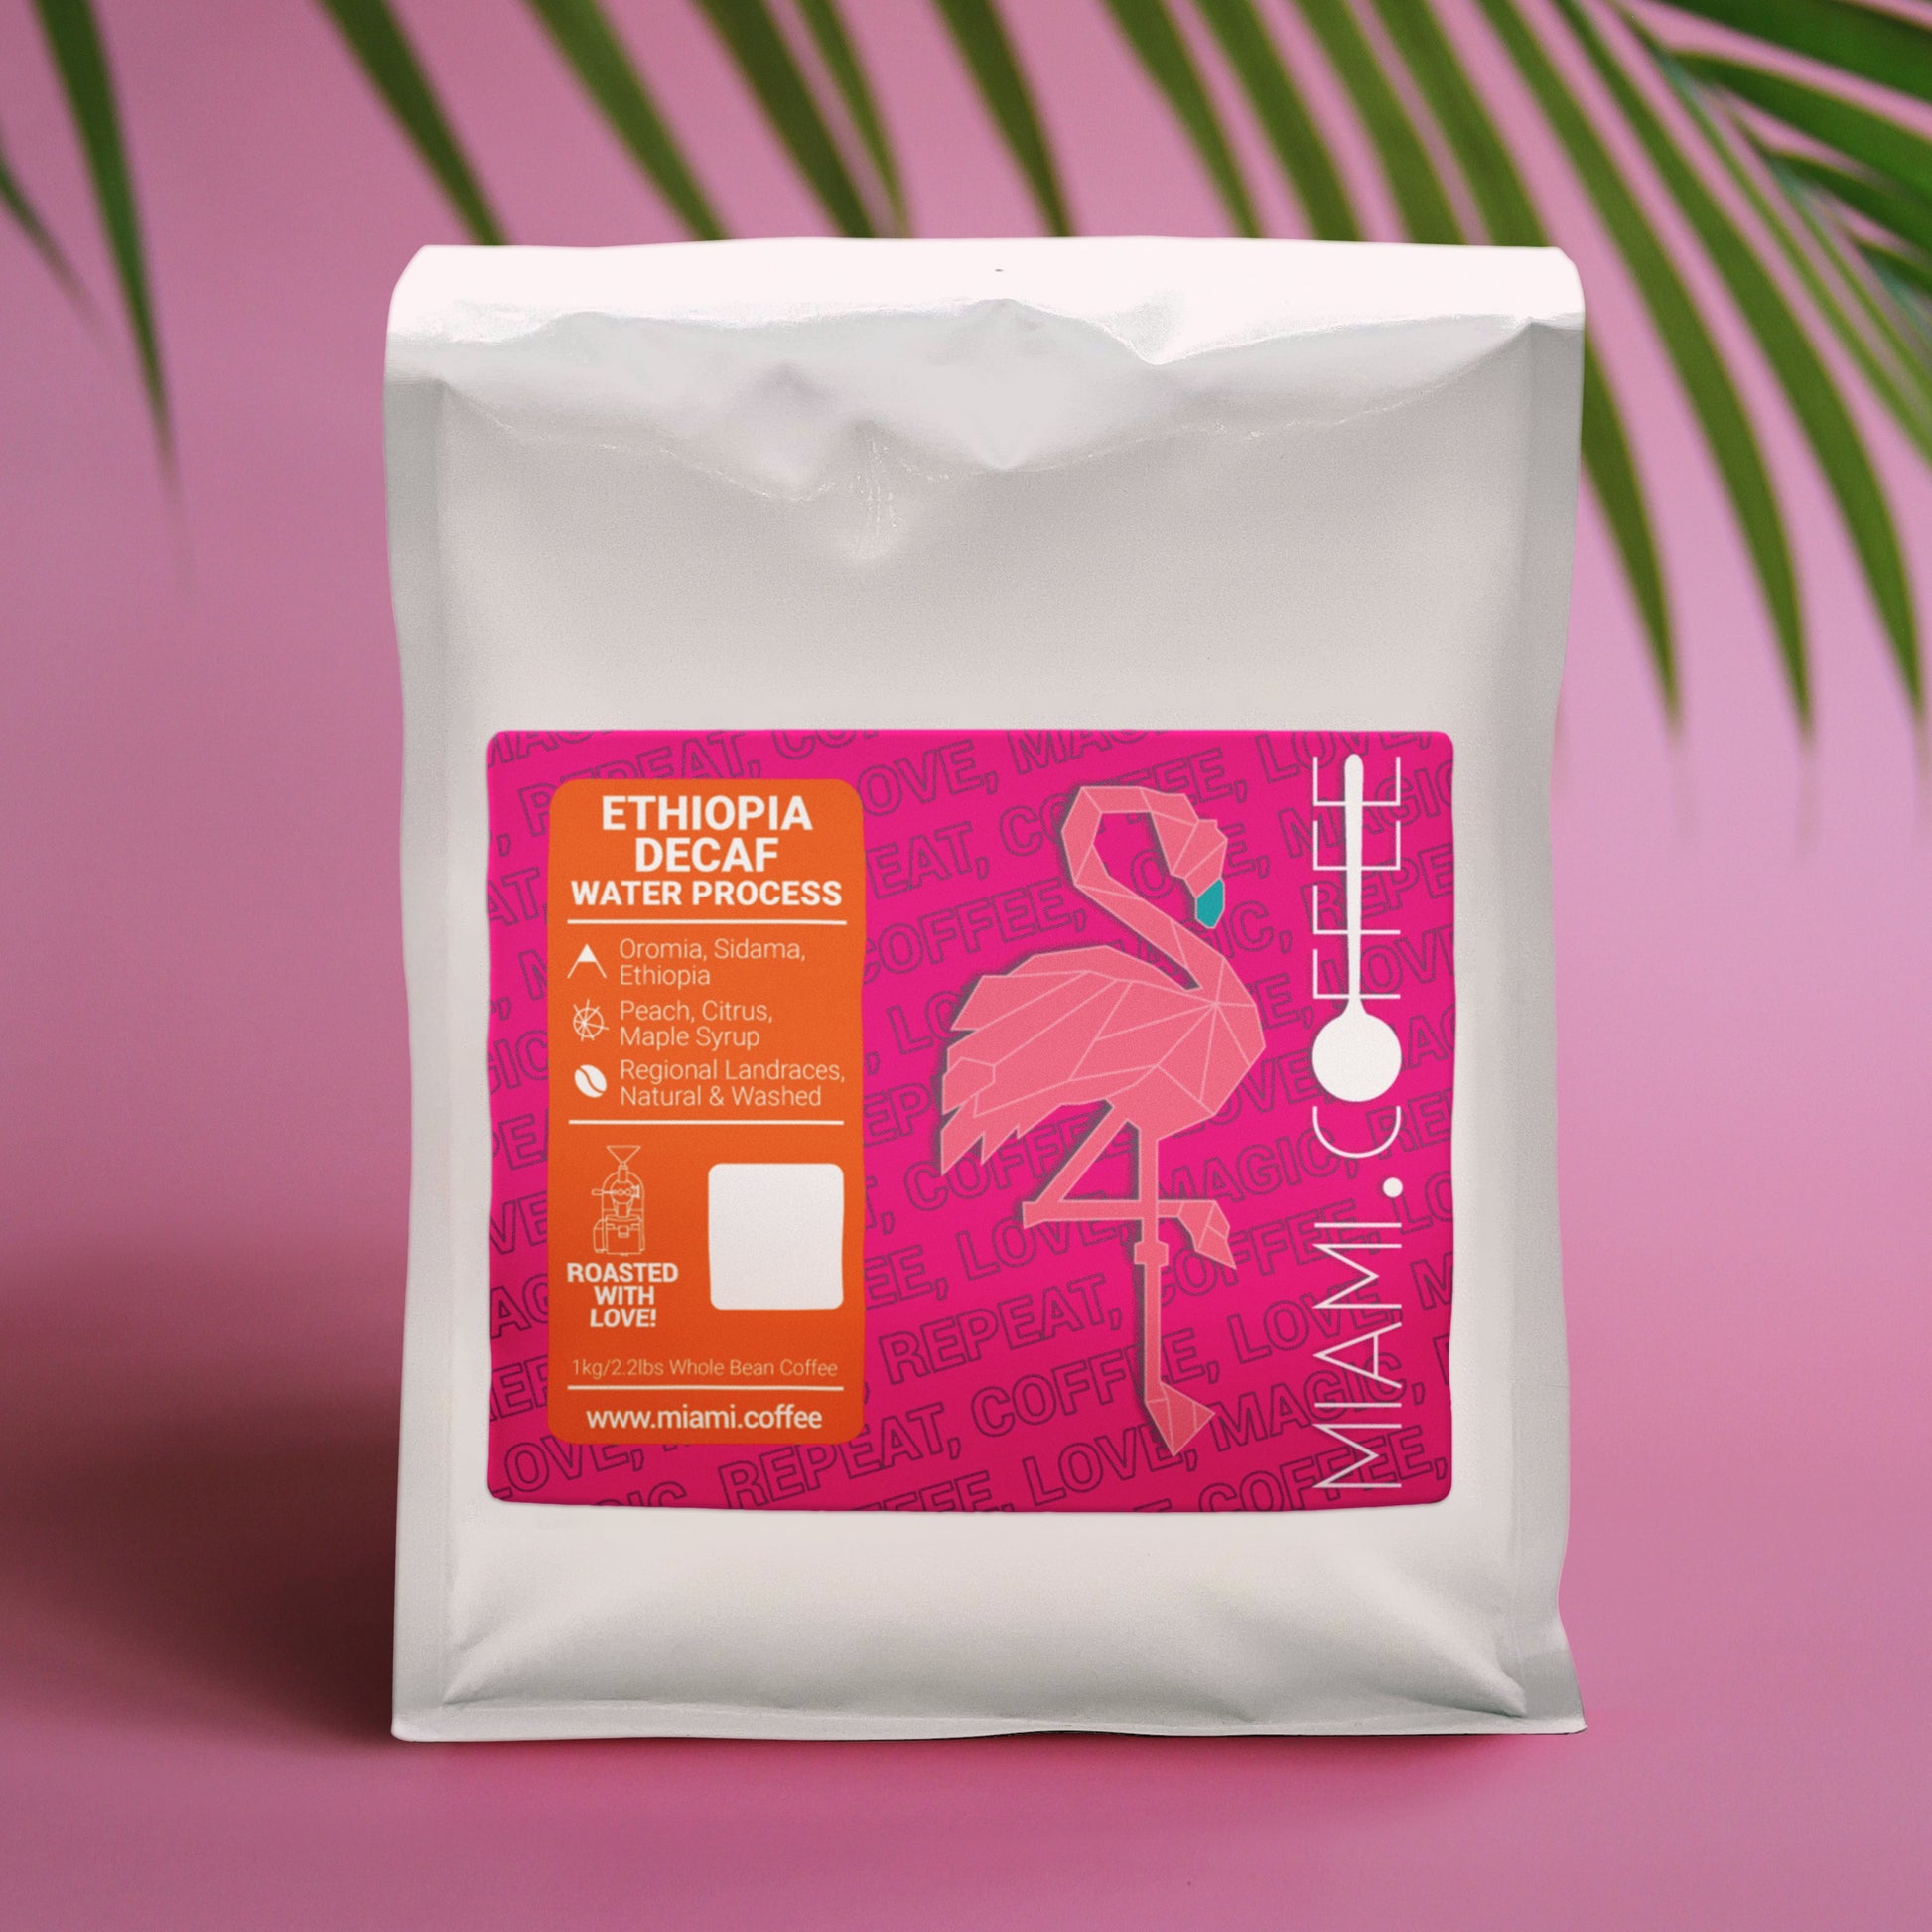 1 Kilogram bag of Ethiopia Water Process Decaf by Miami (dot) Coffee Flavor Descriptors Peach, Citrus, Maple Syrup. 